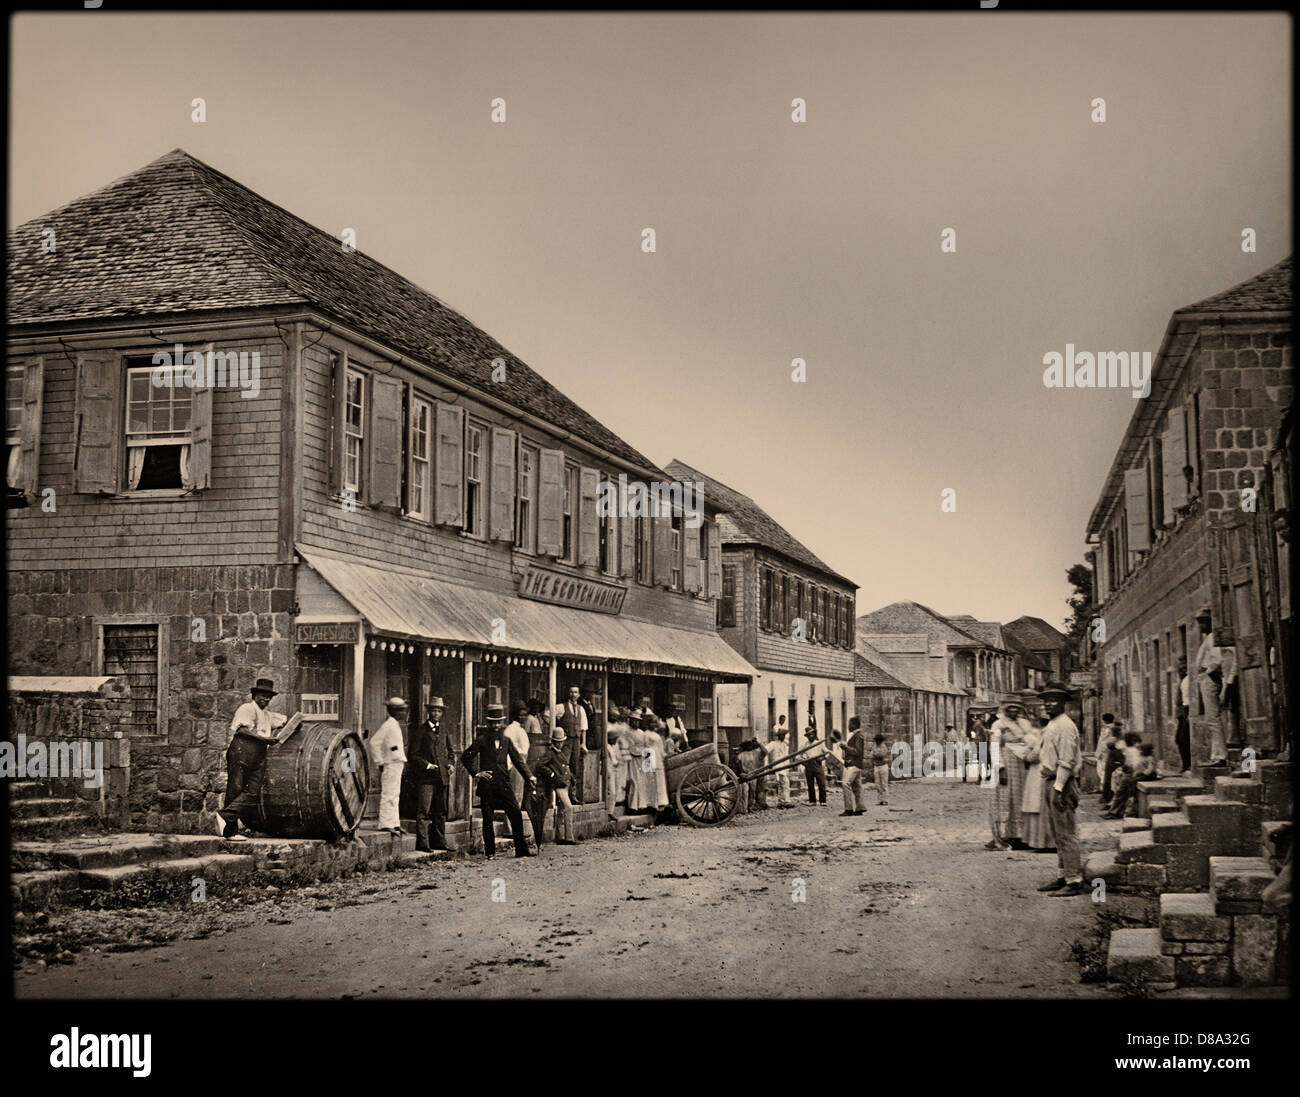 Charlestown, Nevis, ca 1870 Stock Photo